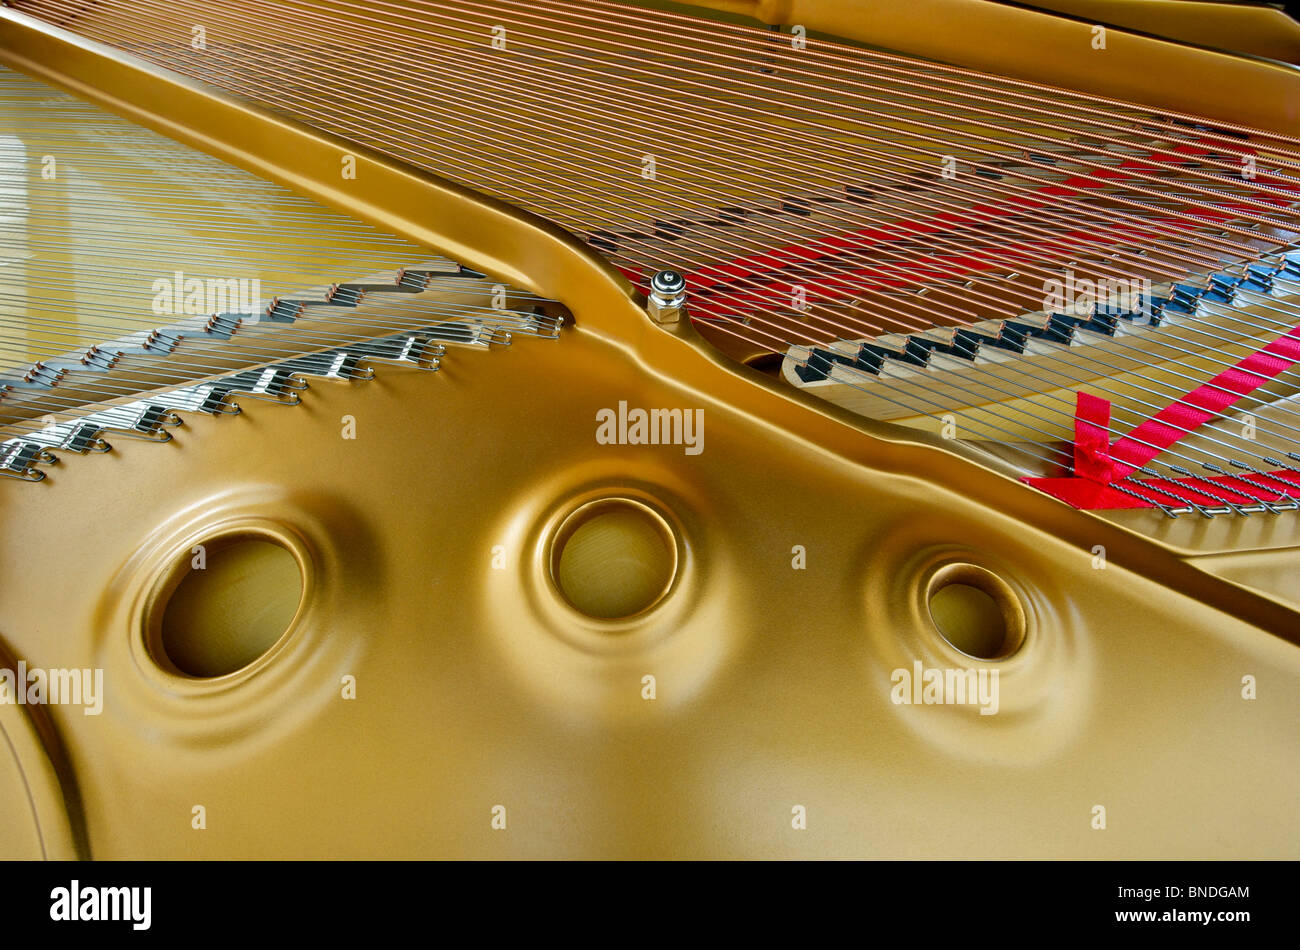 Steinway B Grand Piano (Interior) Stock Photo